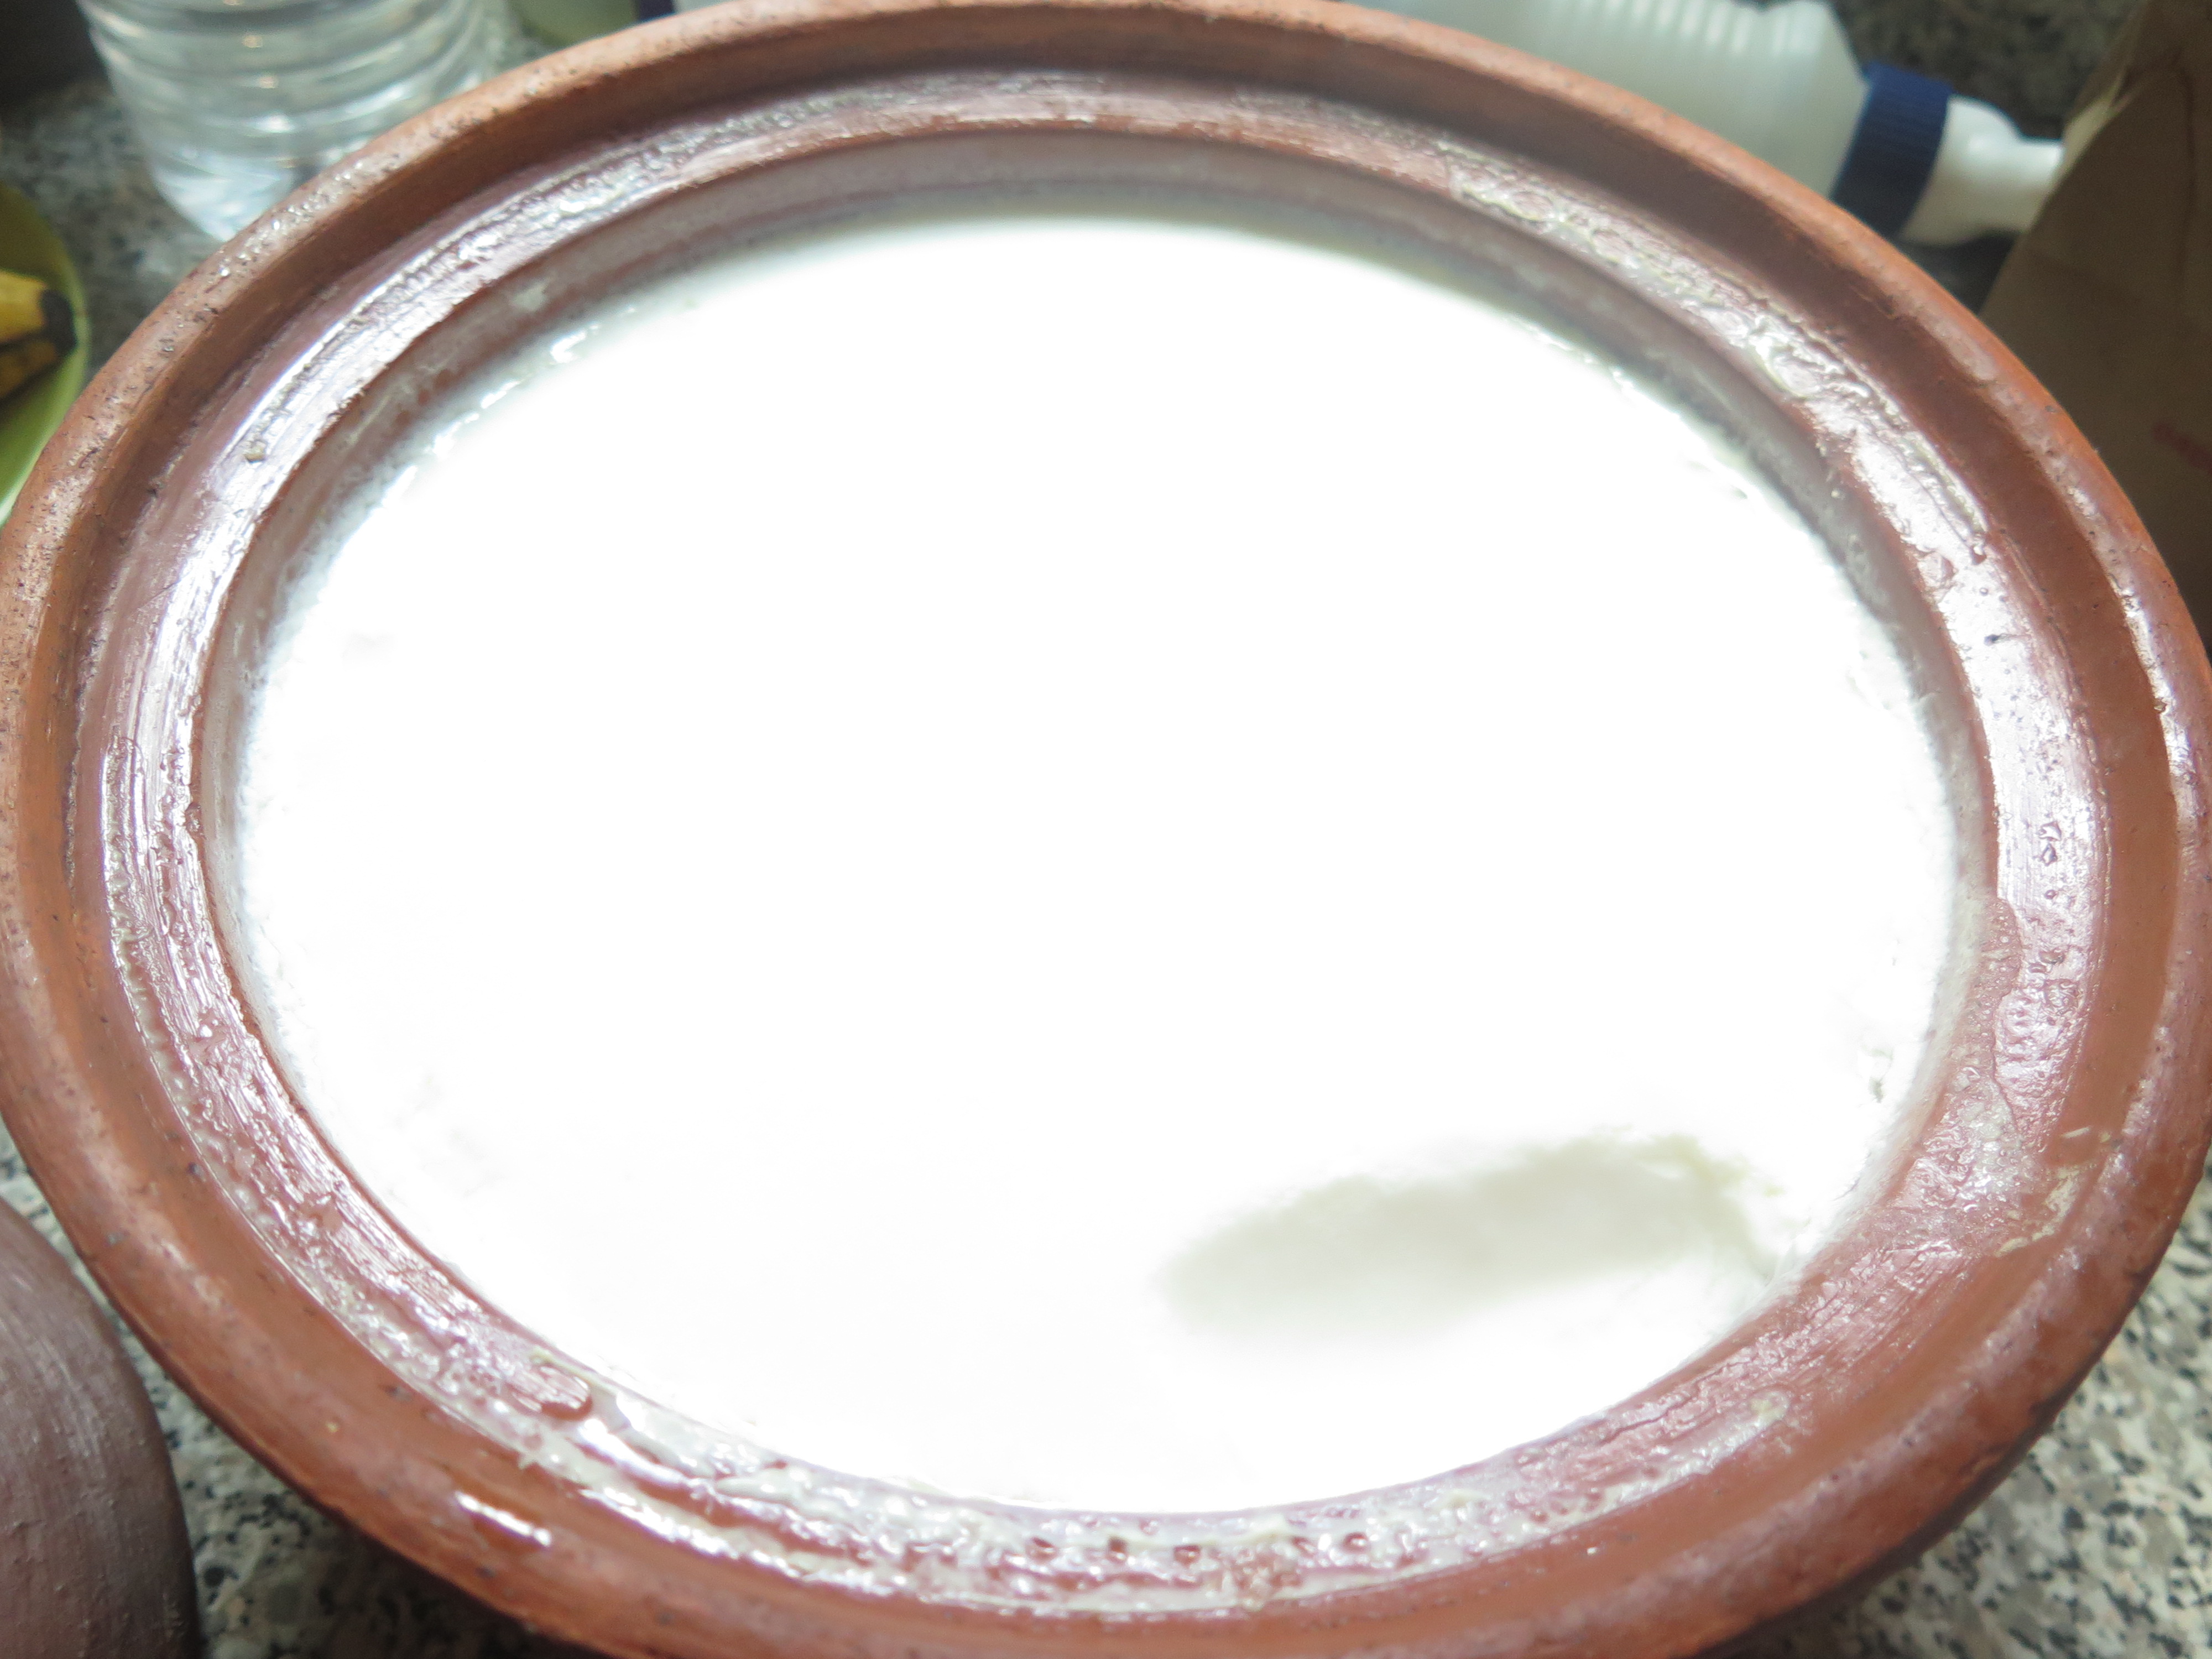 Naturally thick and creamy MEC yogurt